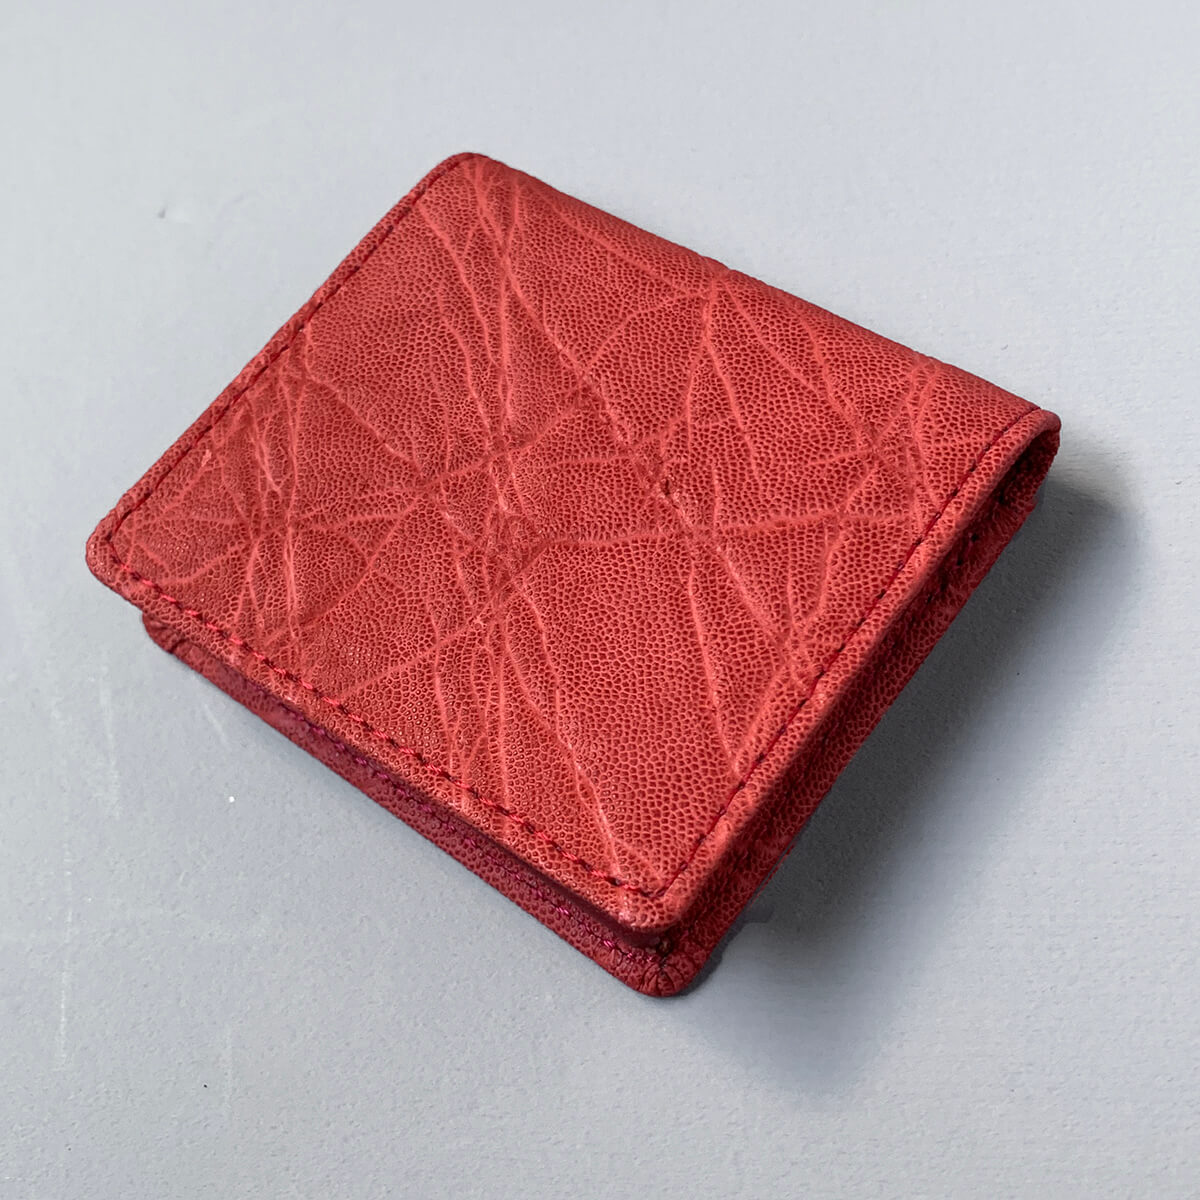 日本の革ブランドレザックの象革コインケースです。色は赤です。